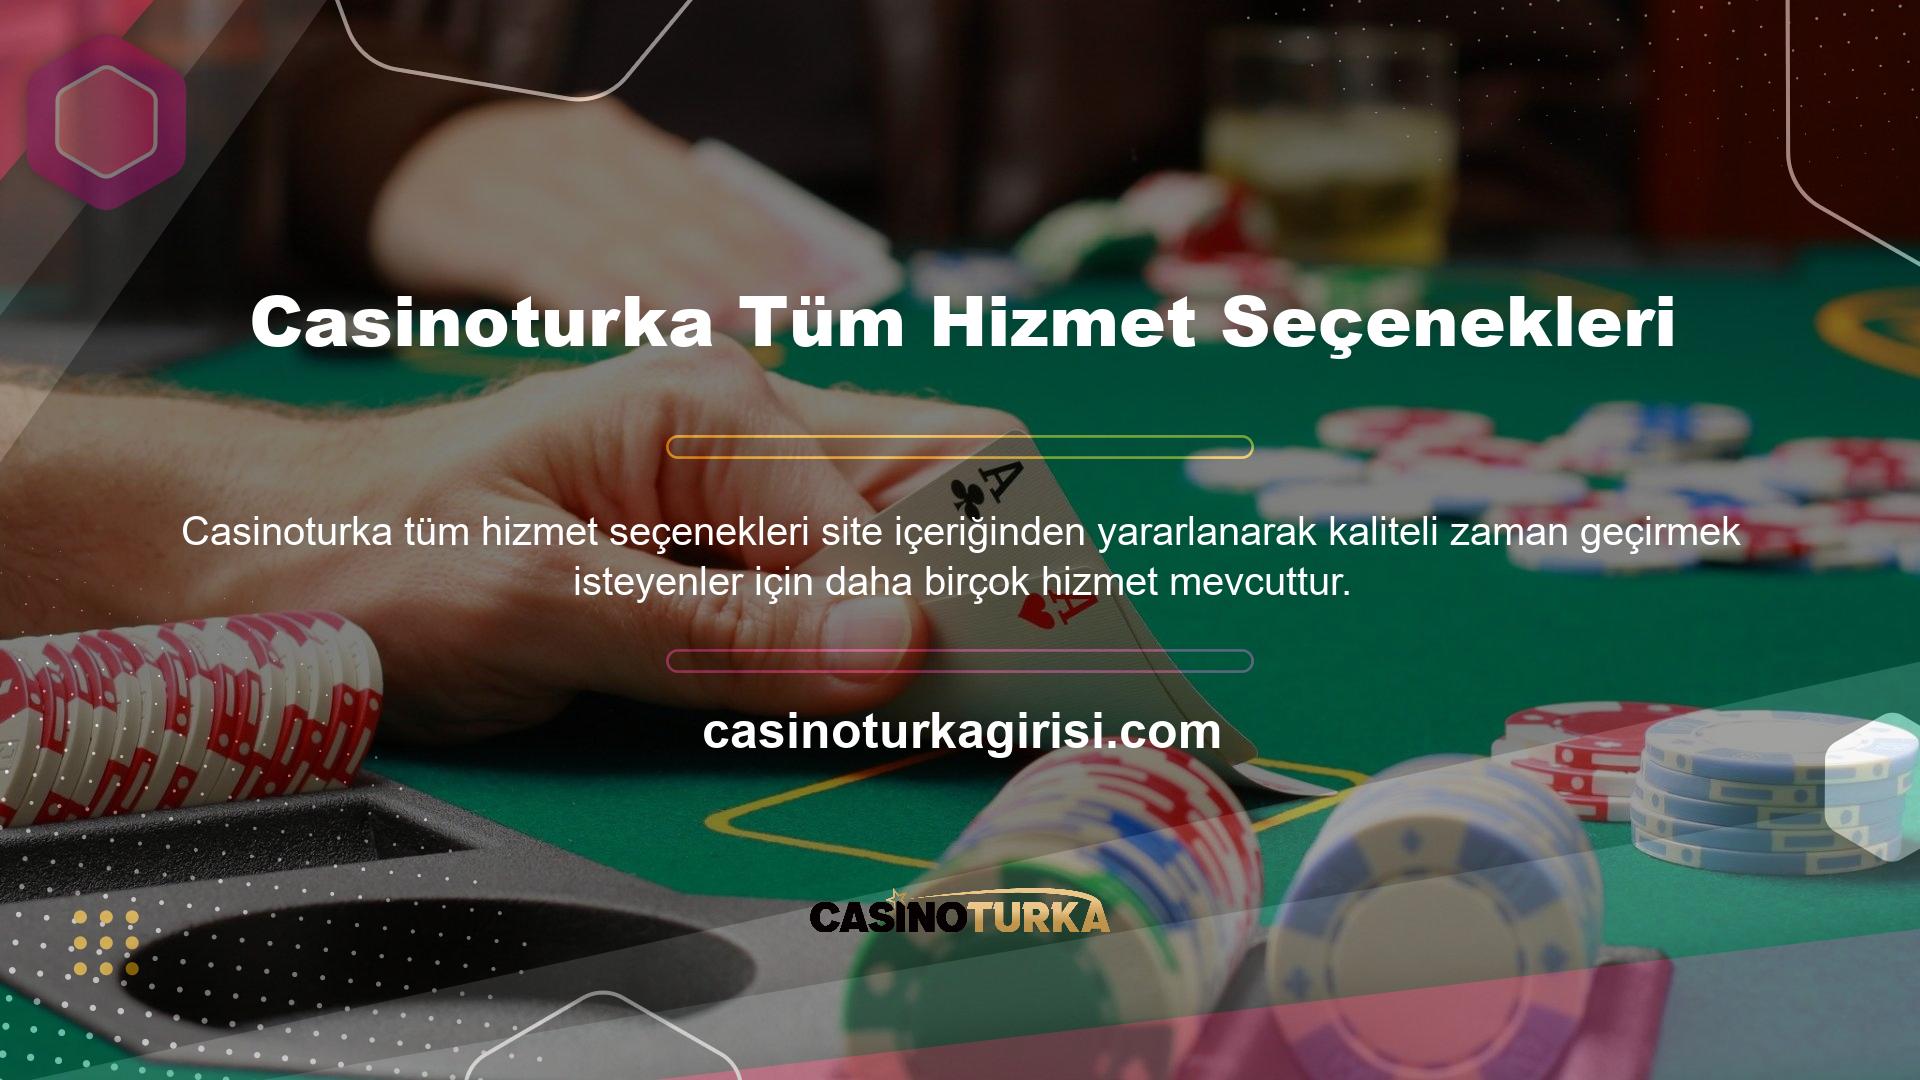 Casinoturka Online Casino'nun oyun ortamında belirtilen oyun kategorilerine erişim sunan slot makinesi oyunlarının keyfini çıkarabilirsiniz